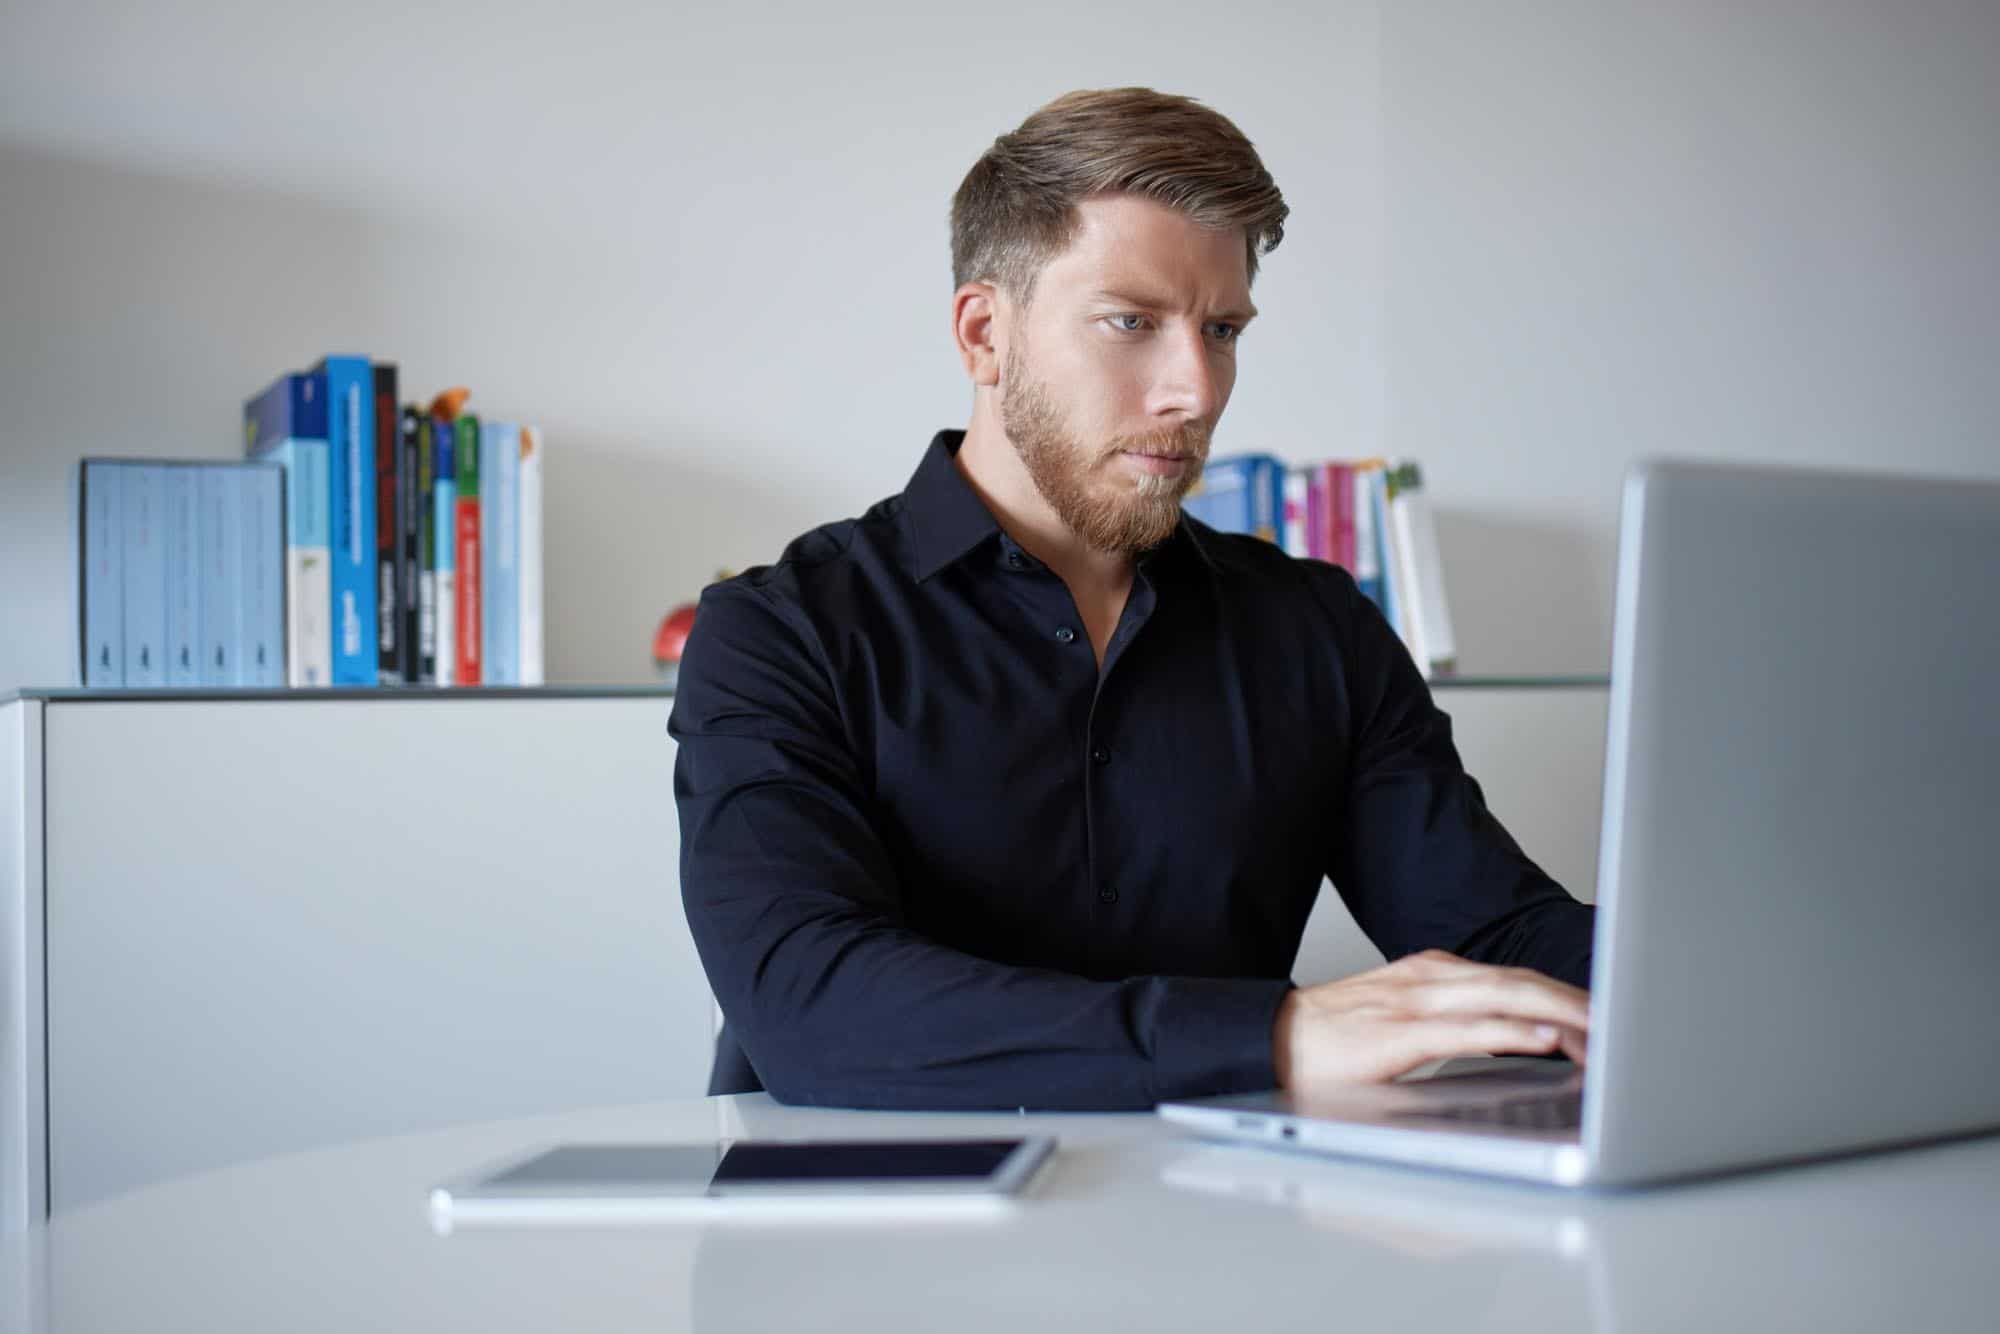 Ein Mann sitzt an einem Tisch mit einem Laptop vor ihm und einem Bücherregal hinter ihm